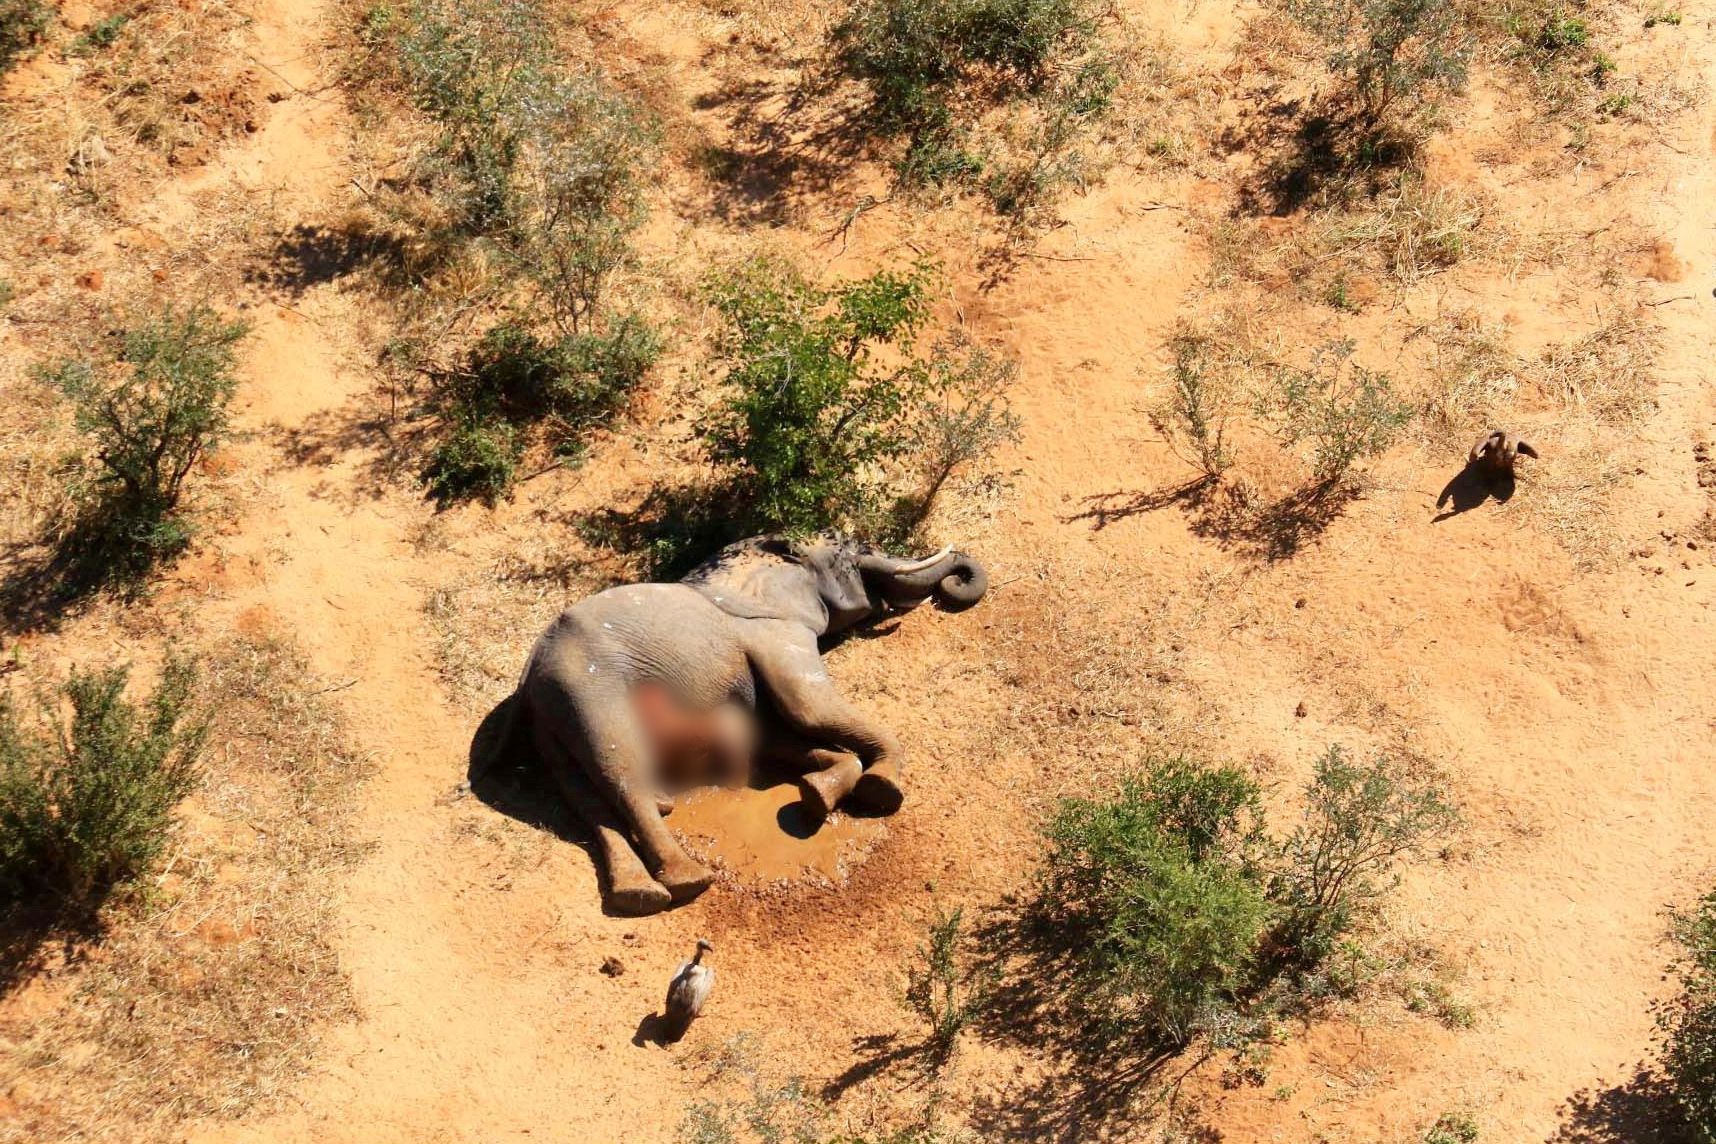 Fotogalerie / Záhada masového úhynu slonů v Botswaně